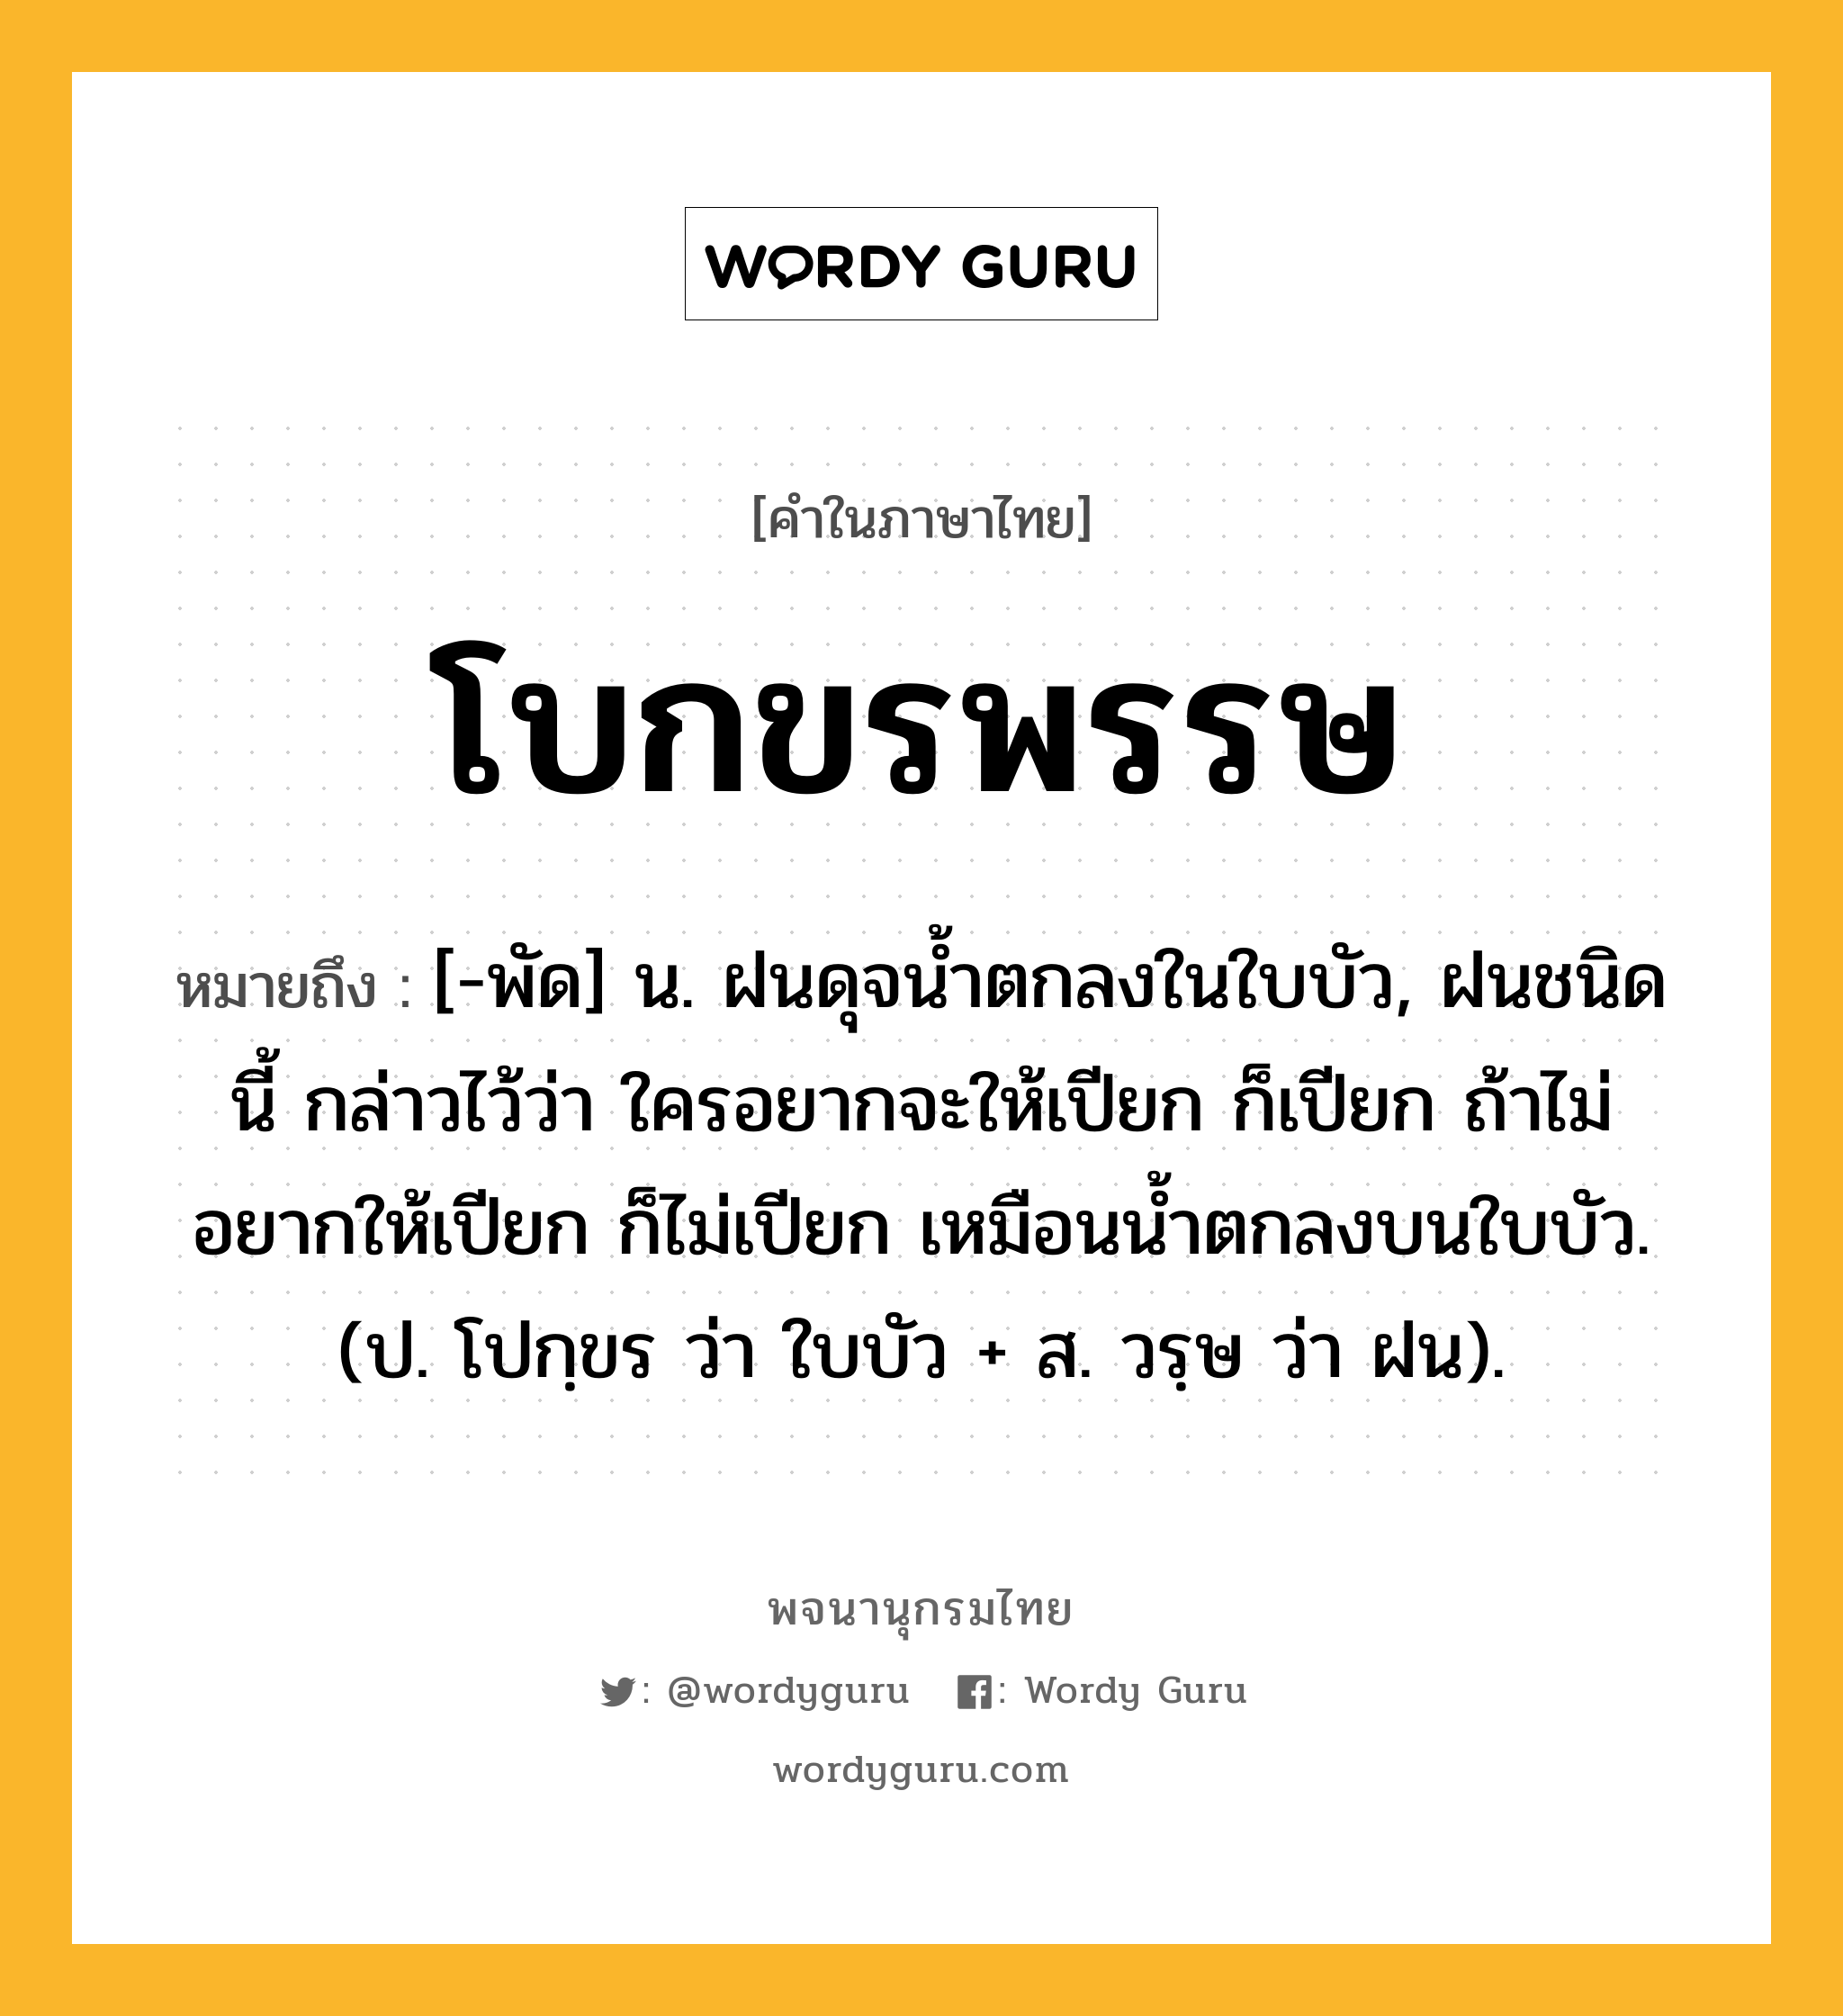 โบกขรพรรษ ความหมาย หมายถึงอะไร?, คำในภาษาไทย โบกขรพรรษ หมายถึง [-พัด] น. ฝนดุจนํ้าตกลงในใบบัว, ฝนชนิดนี้ กล่าวไว้ว่า ใครอยากจะให้เปียก ก็เปียก ถ้าไม่อยากให้เปียก ก็ไม่เปียก เหมือนนํ้าตกลงบนใบบัว. (ป. โปกฺขร ว่า ใบบัว + ส. วรฺษ ว่า ฝน).